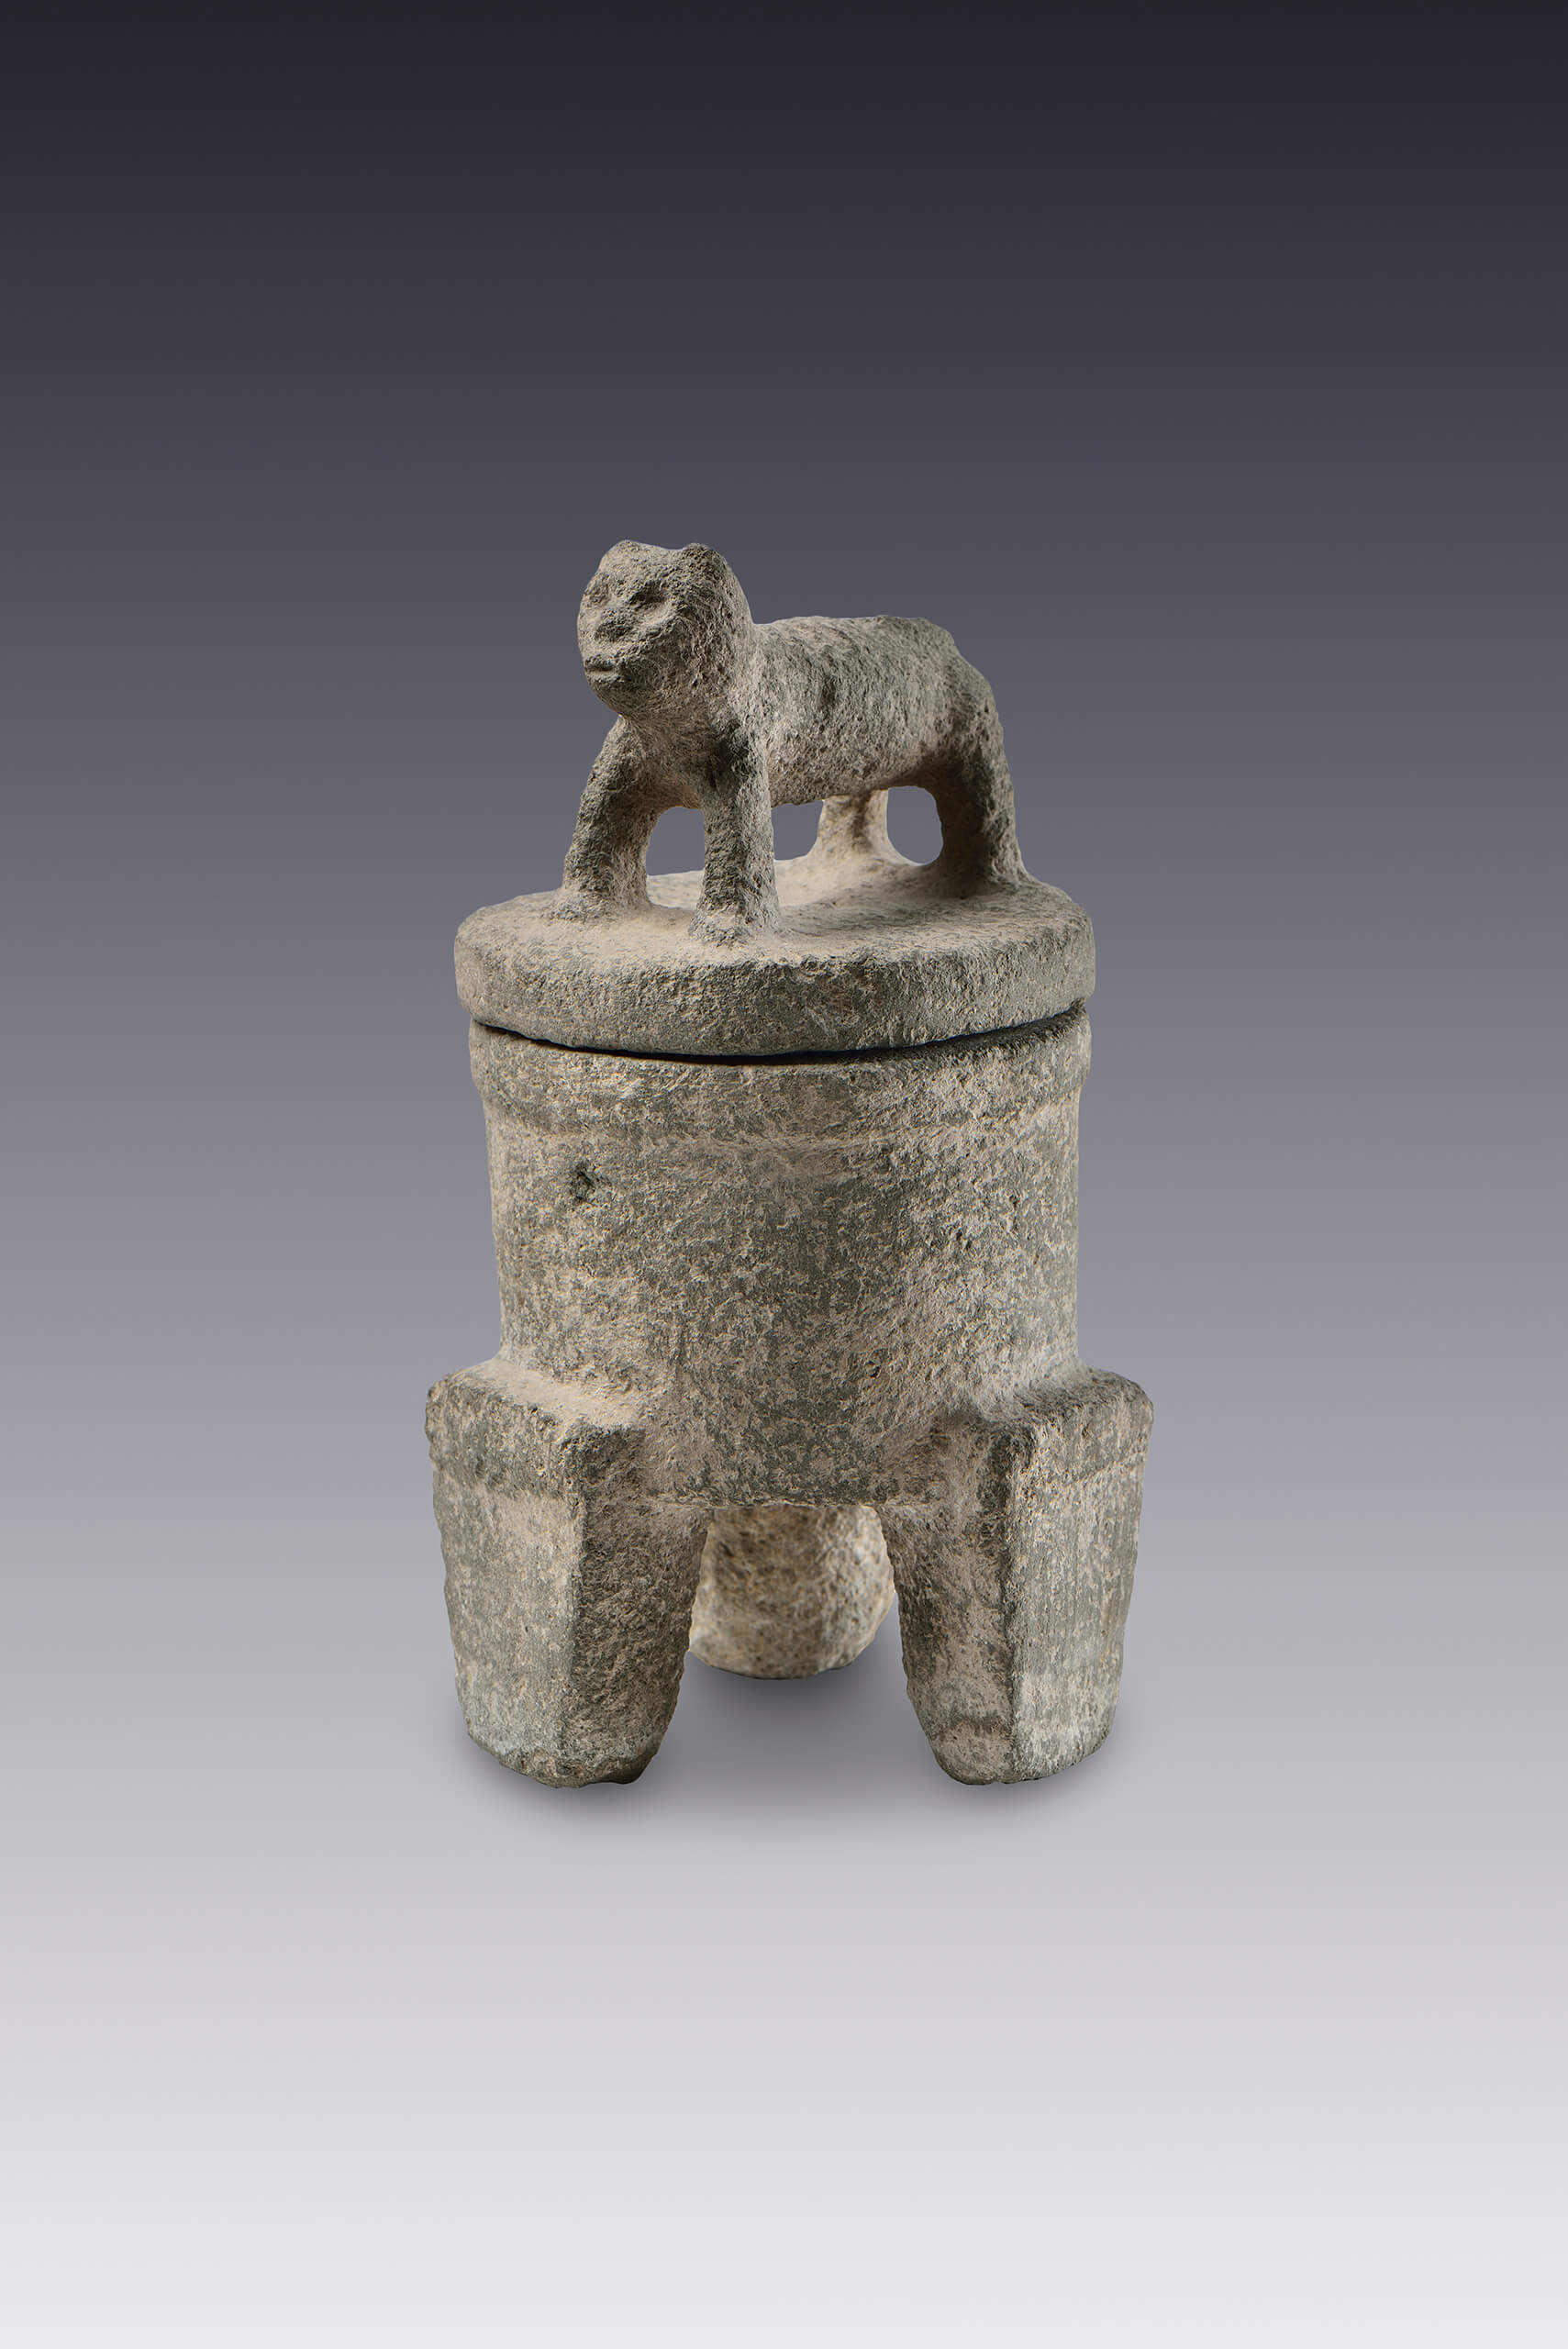 Recipiente trípode con tapadera zoomorfa | El México antiguo. Salas de Arte Prehispánico | Museo Amparo, Puebla